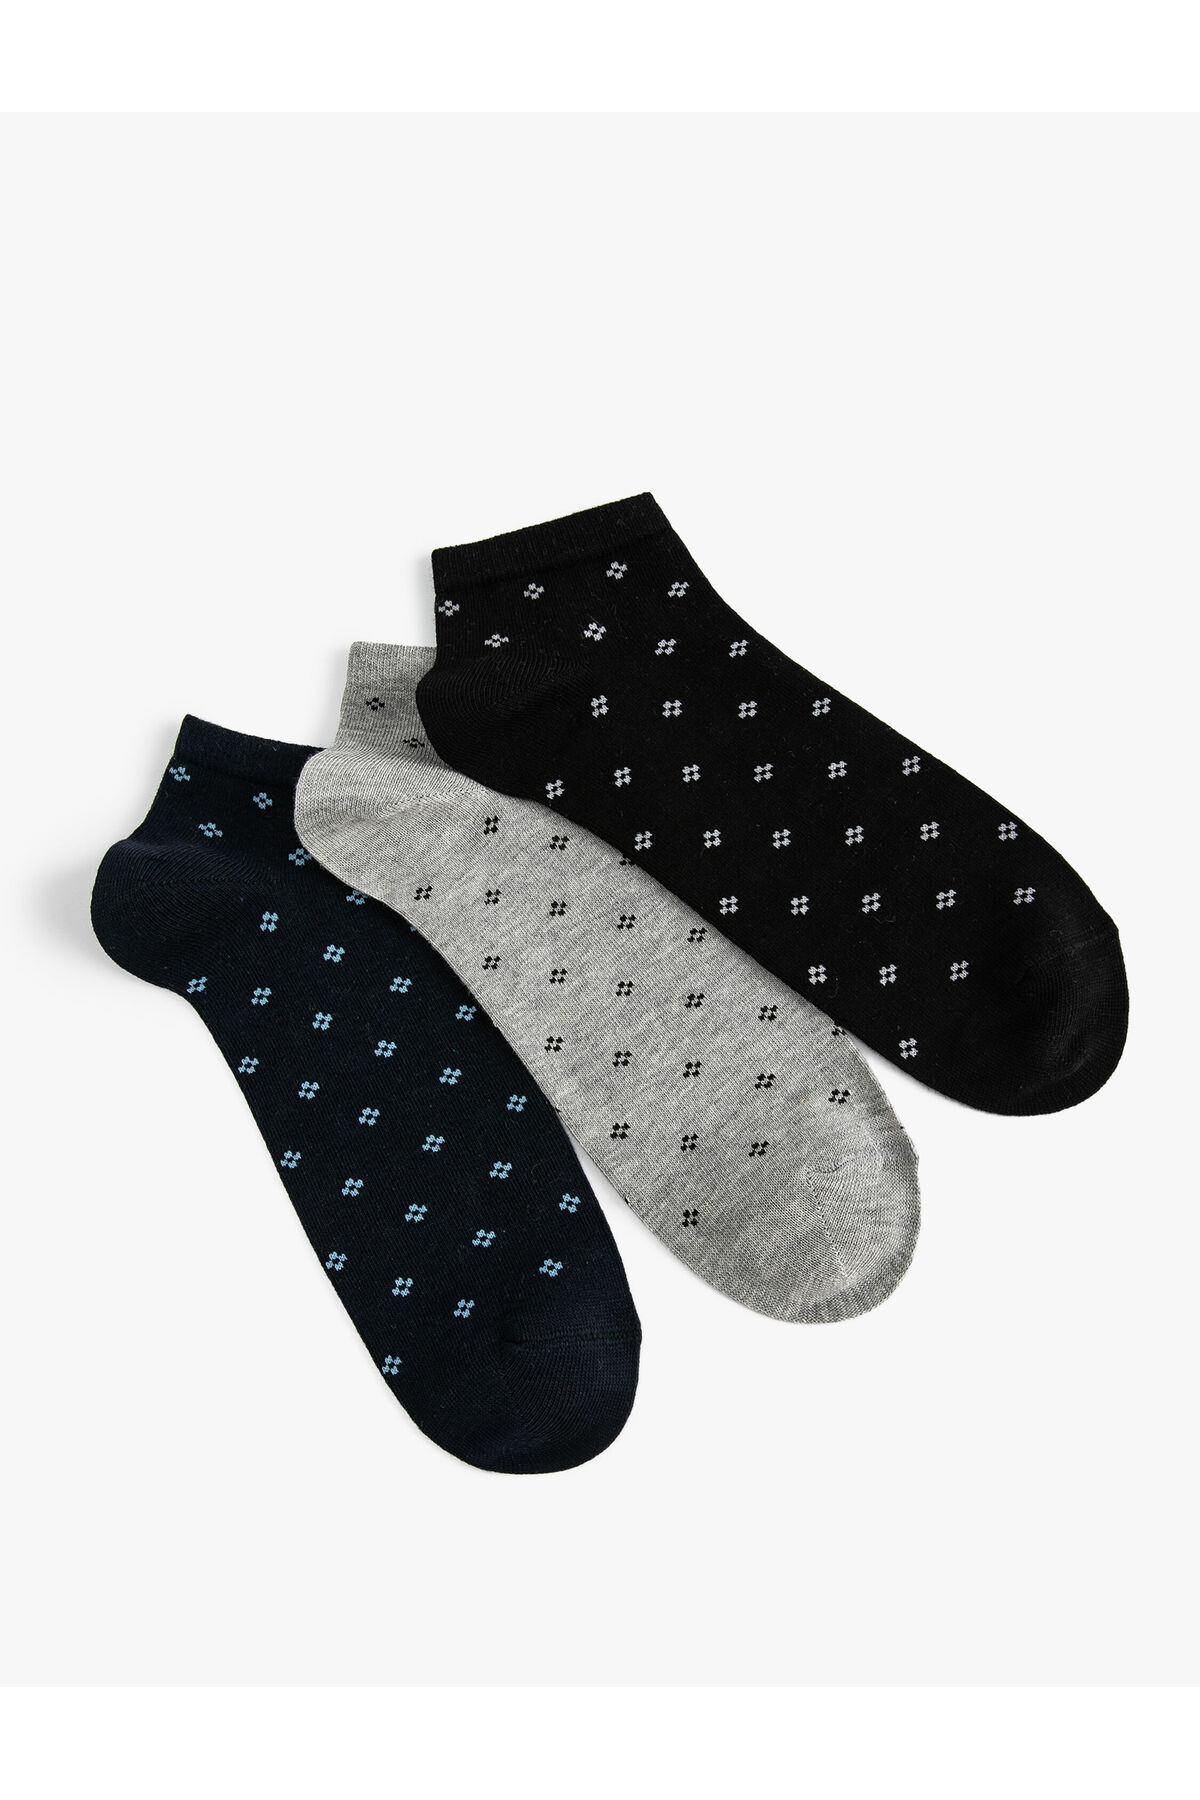 Levně Koton 3-Piece Booties Socks Set Geometric Pattern Multi Color